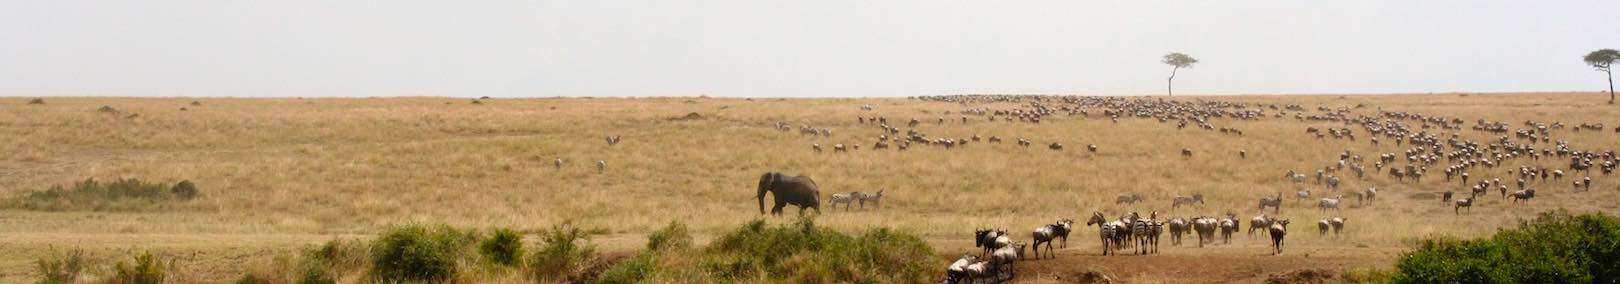 Mara-River-Wildebeest-Migration